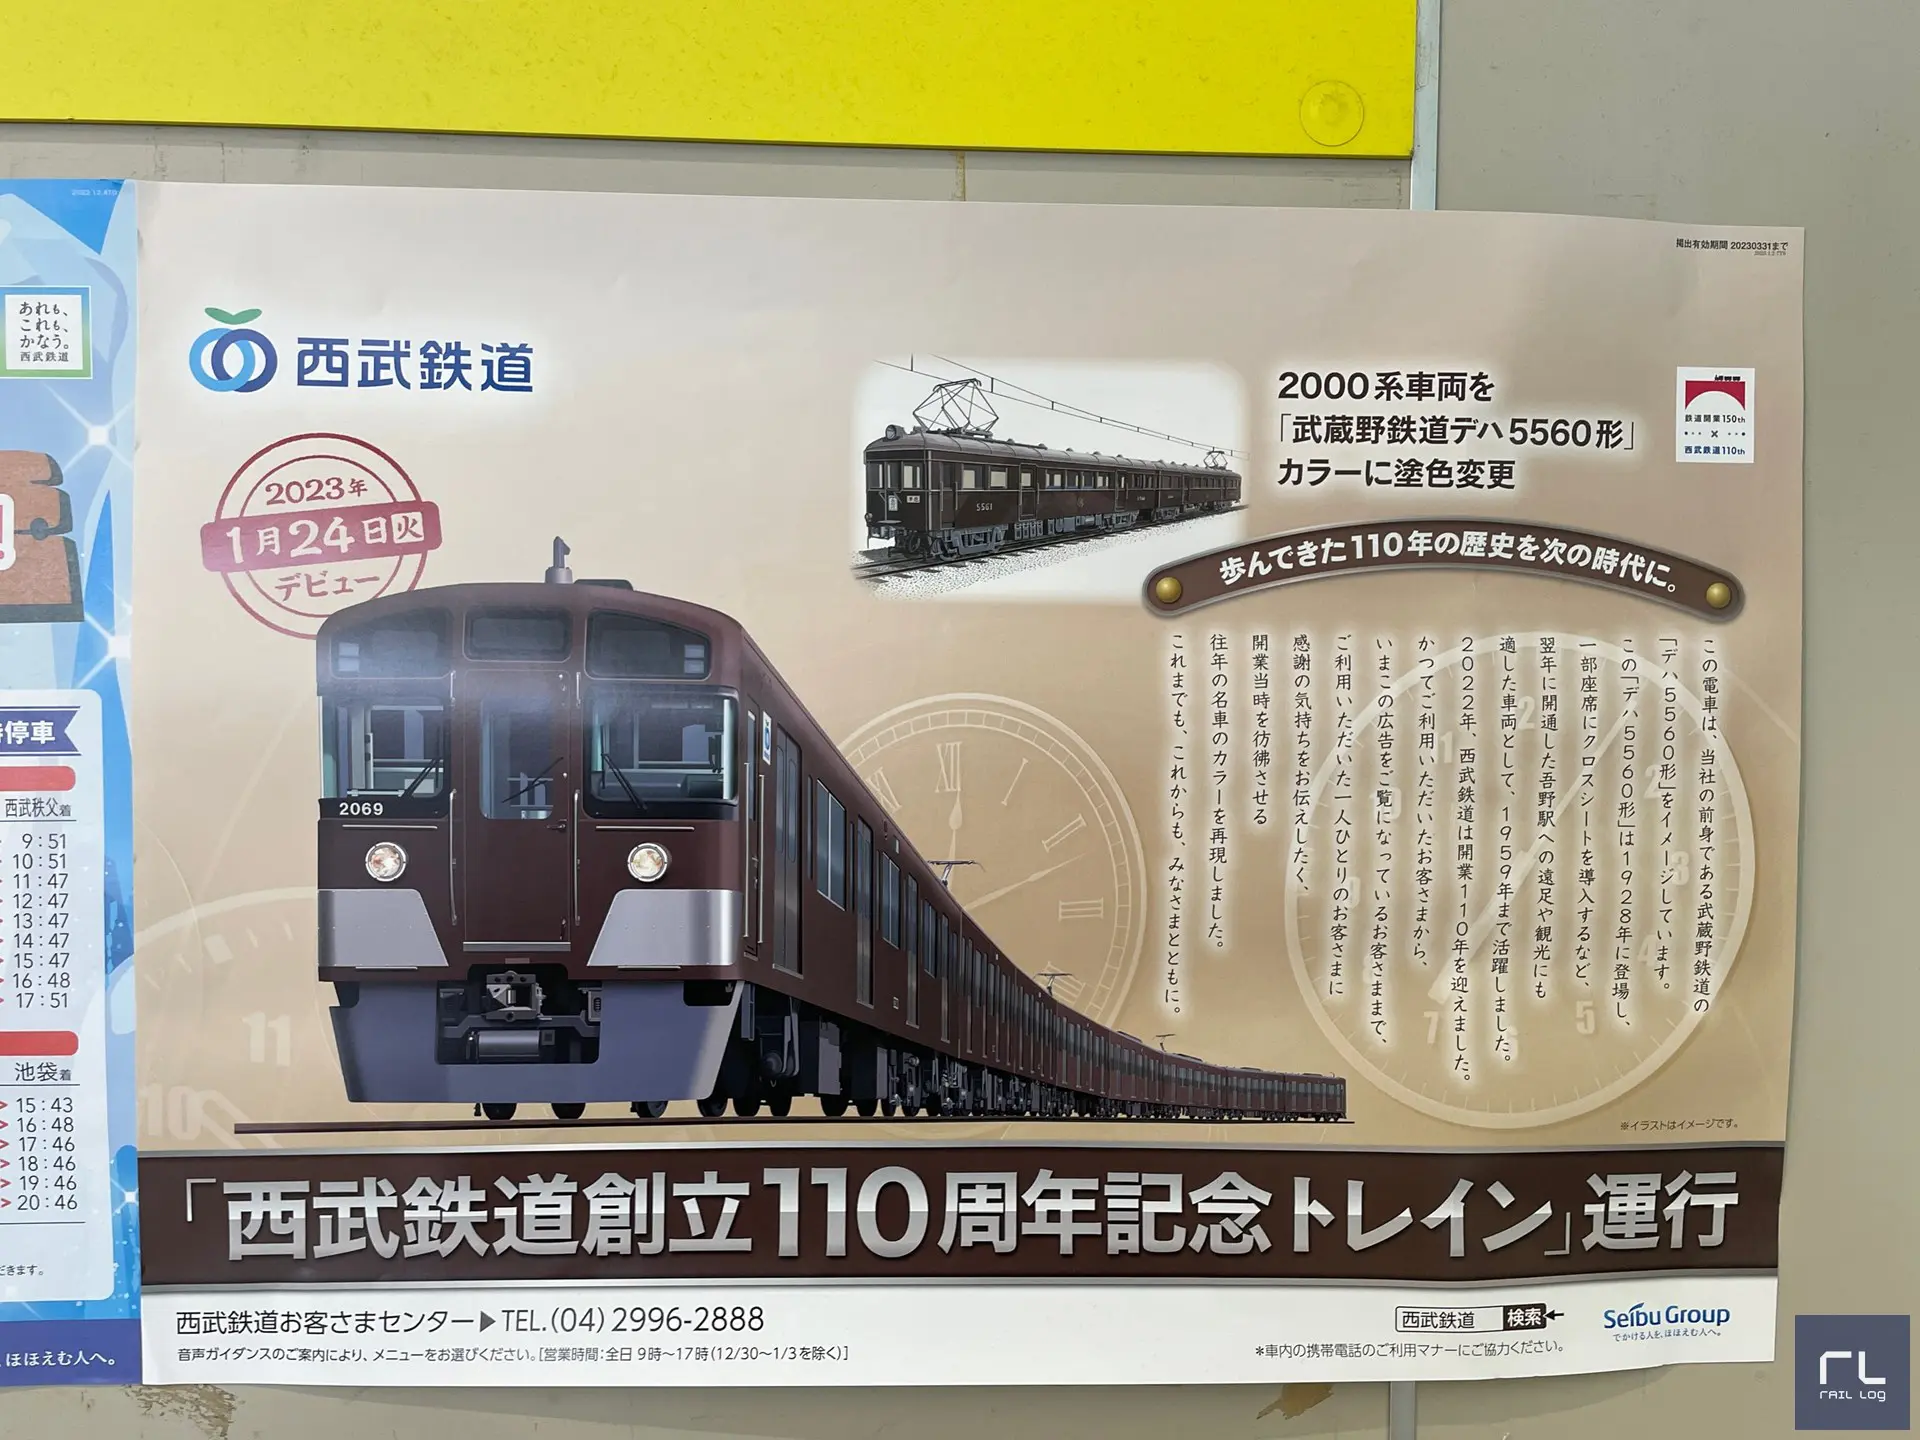 歩んできた110年の歴史を次の時代に。

この電車は、当社の前身である武蔵野鉄道の「デハ5560形」をイメージしています。
この「デハ5560形」は1928年に登場し、一部座席にクロスシートを導入するなど、翌年に開通した吾野駅への遠足や観光にも適した車両として、1959年まで活躍しました。
2022年、西武鉄道は開業110年を迎えました。
かつてご利用いただいたお客さまから、いまこの広告をご覧になっているお客さままで、ご利用いただいた一人ひとりのお客さまに感謝の気持ちをお伝えしたく、開業当時を彷彿とさせる往年の名車のカラーを再現しました。
これまでも、これからも、みなさまとともに。